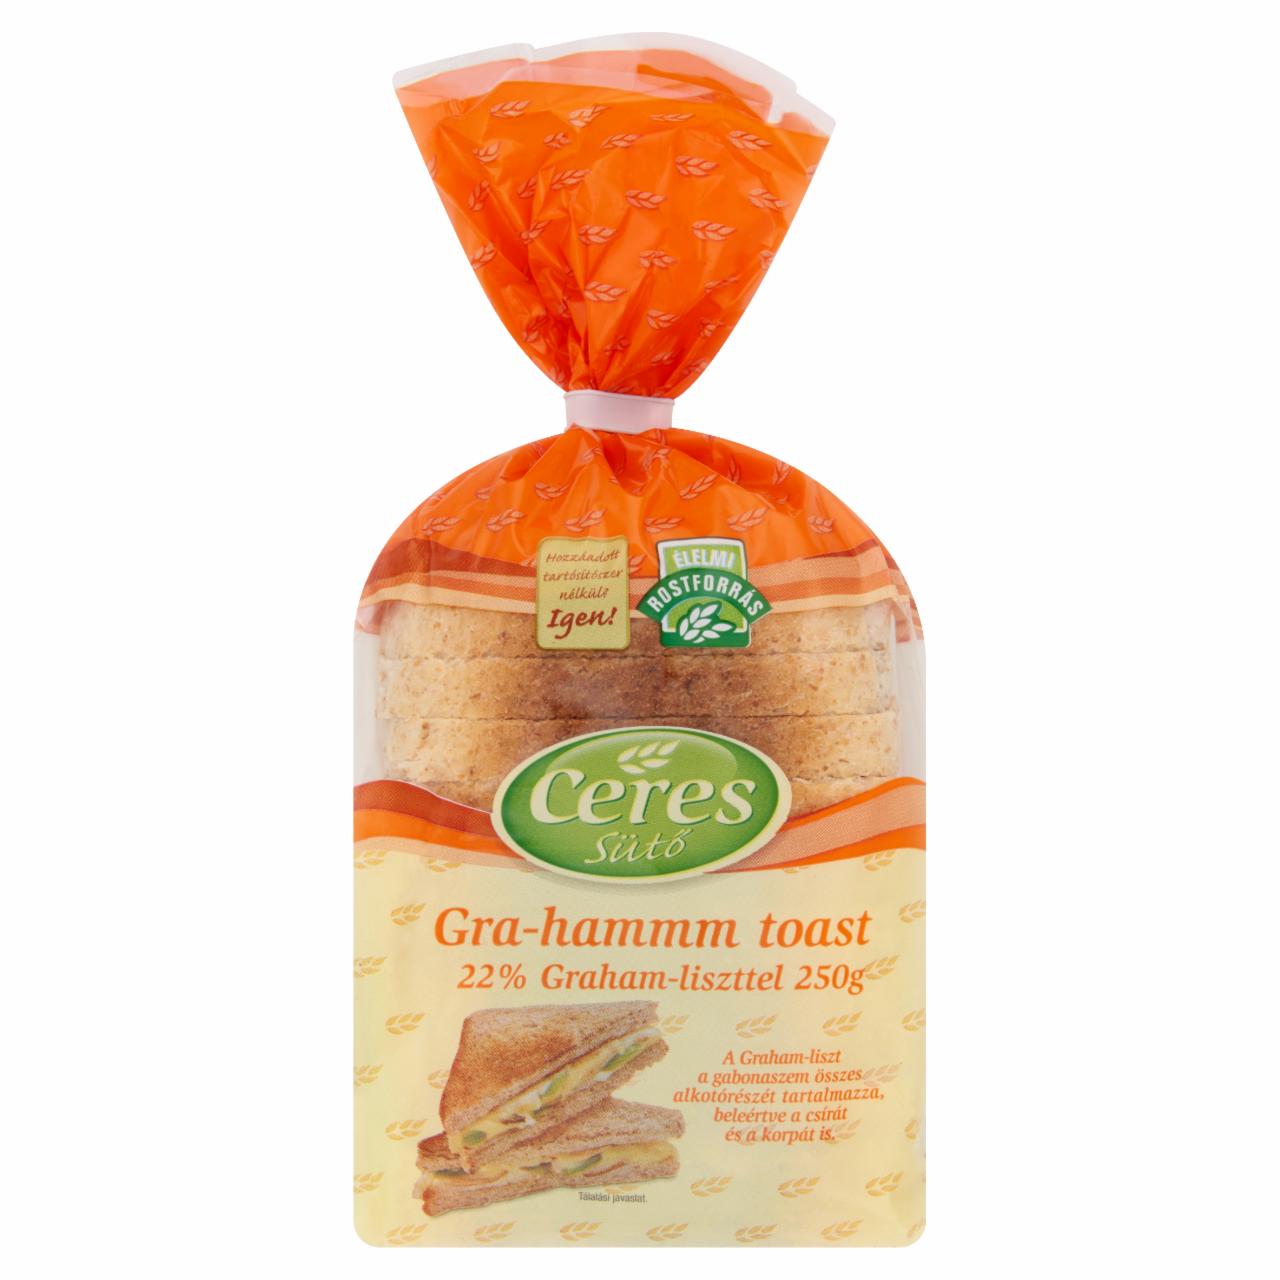 Képek - Ceres Gra-Hammm toast Graham-liszttel 250 g